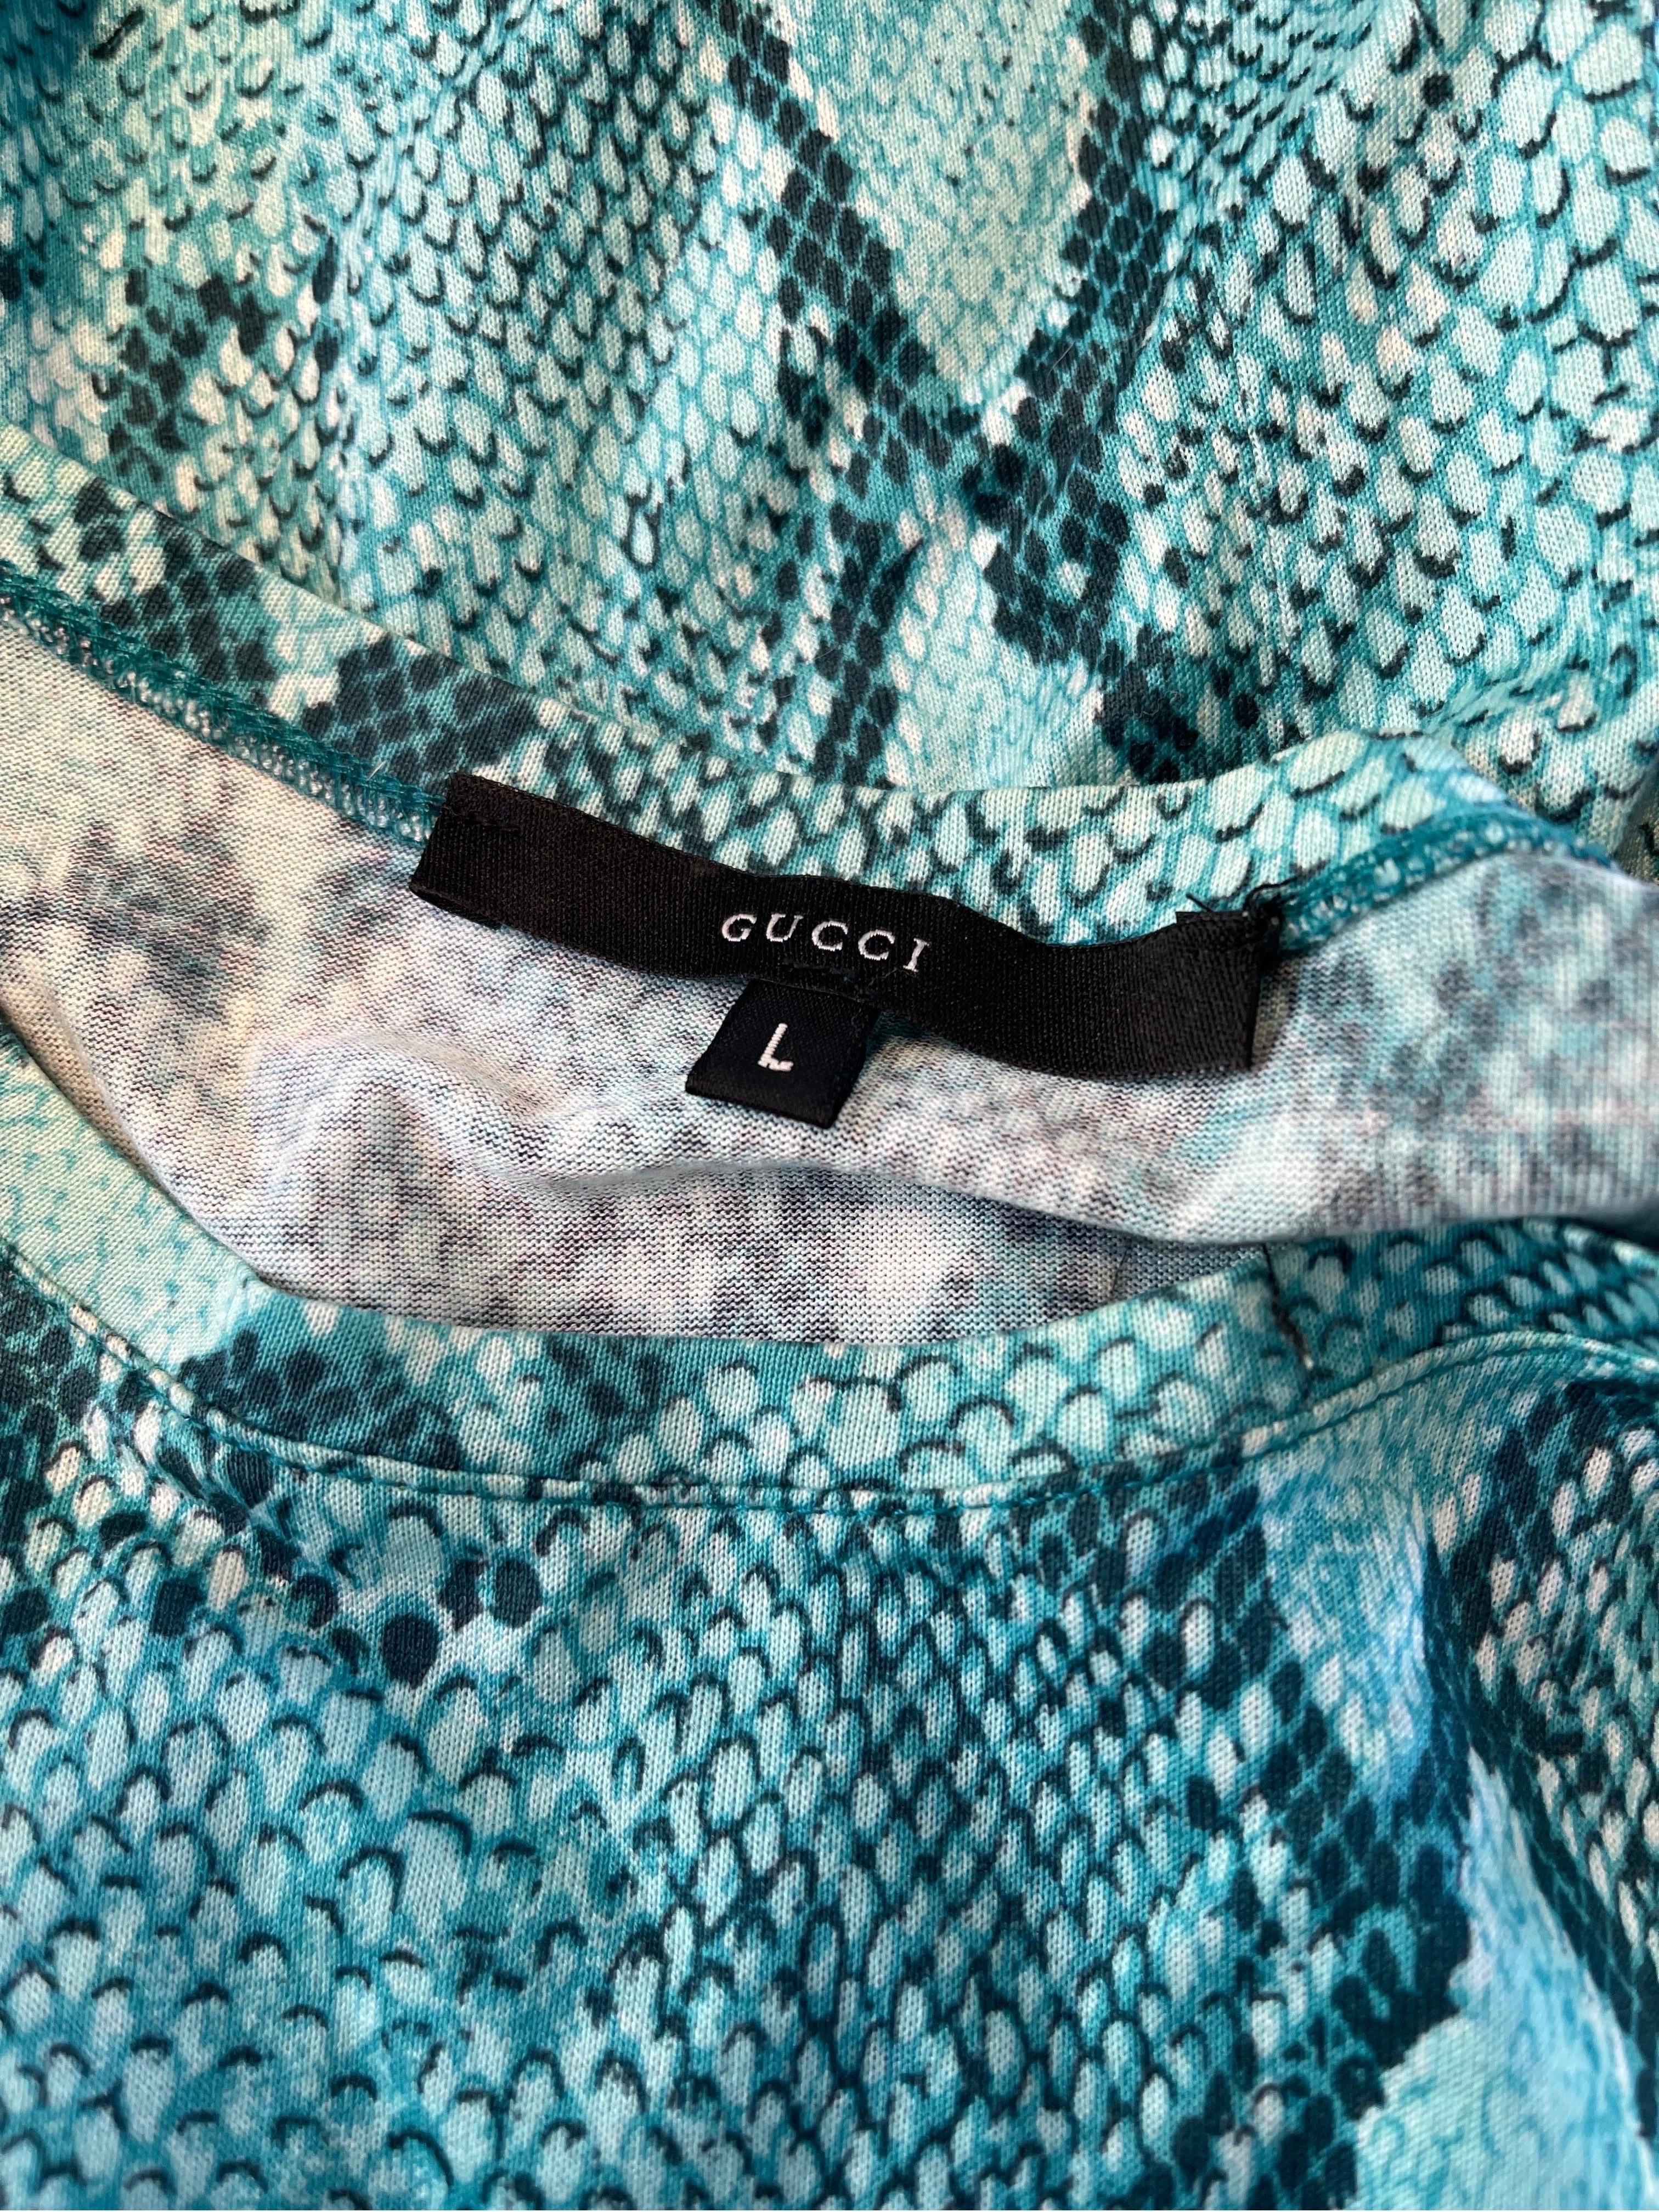 GUCCI by TOM FORD Frühjahr / Sommer 2000 türkisblaues Schlangenhaut-/Pythondruck-T-Shirt mit kurzen Ärmeln ! Mit ganzflächigem Schlangendruck. Toll in Schichten oder allein. Leicht beschnitten. Weiche, dehnbare Baumwolle passt sich an.
In tollem,